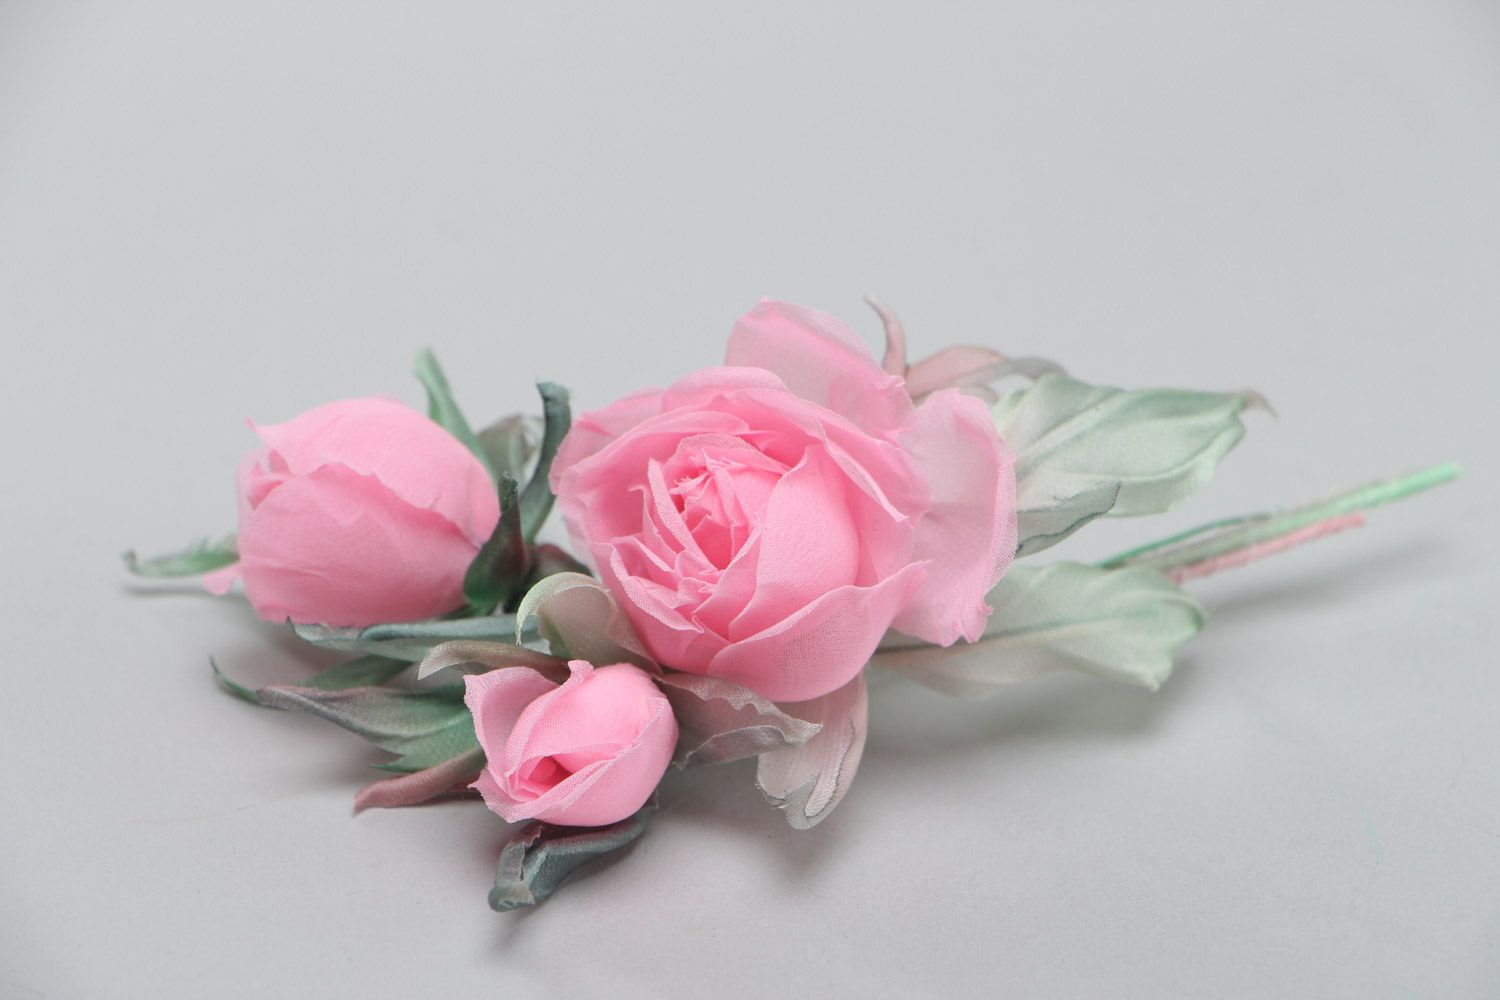 Брошь цветы из ткани розовая нежная красивая для девушки модная ручной работы фото 3